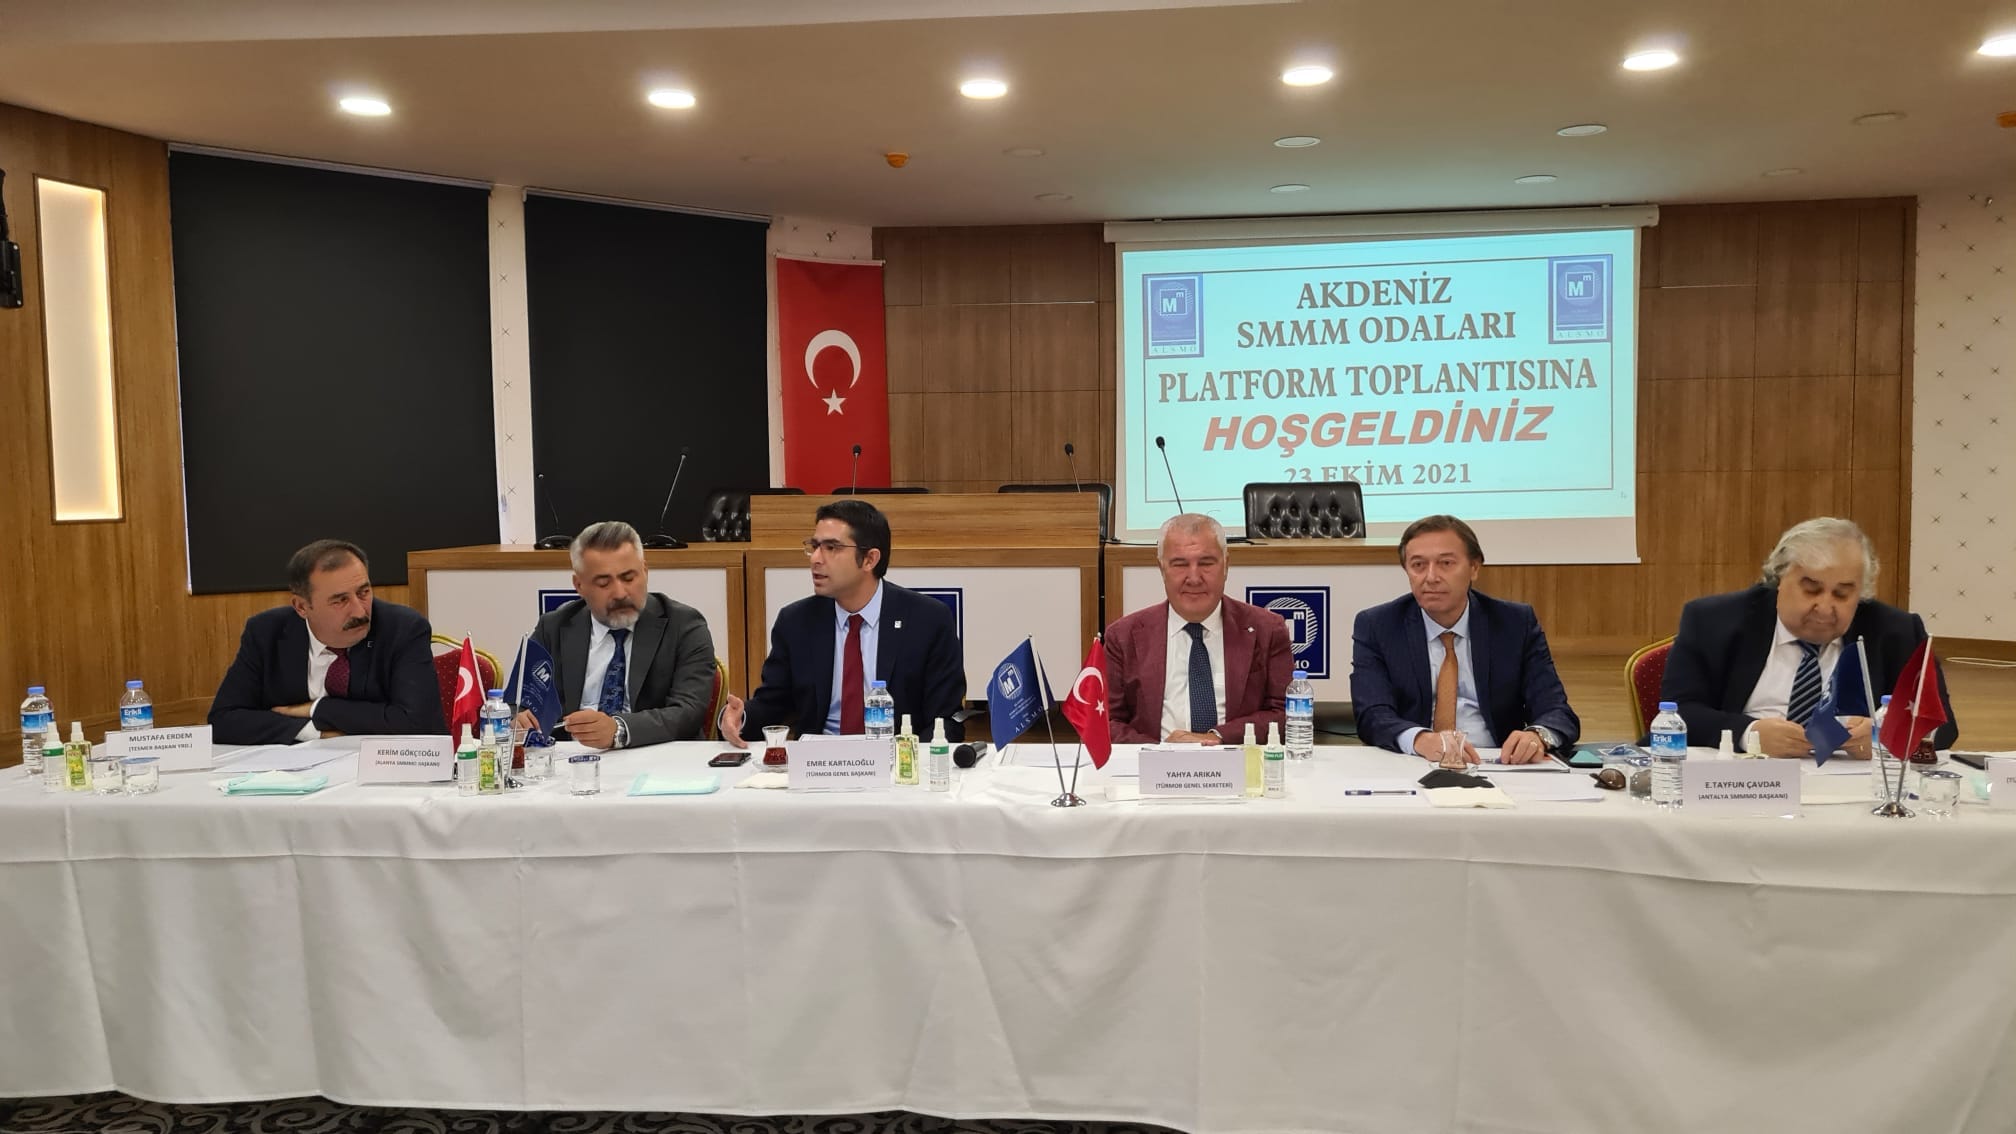 İSMO Alanya’da Düzenlenen Akdeniz SMMM Odaları Platform Toplantısına Katıldı